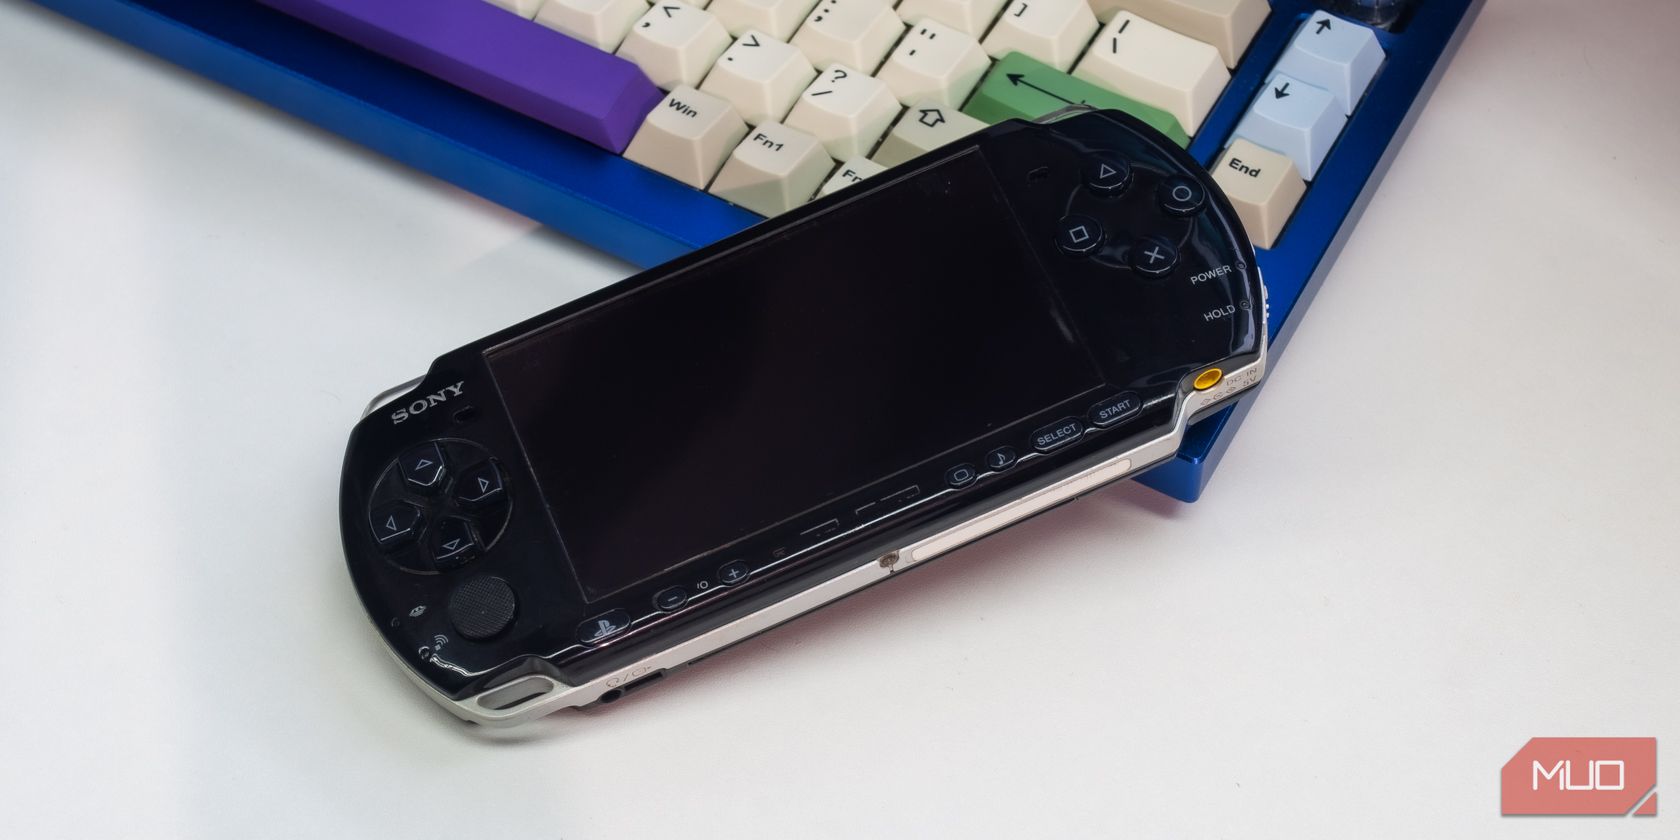 Sony PSP on keyboard